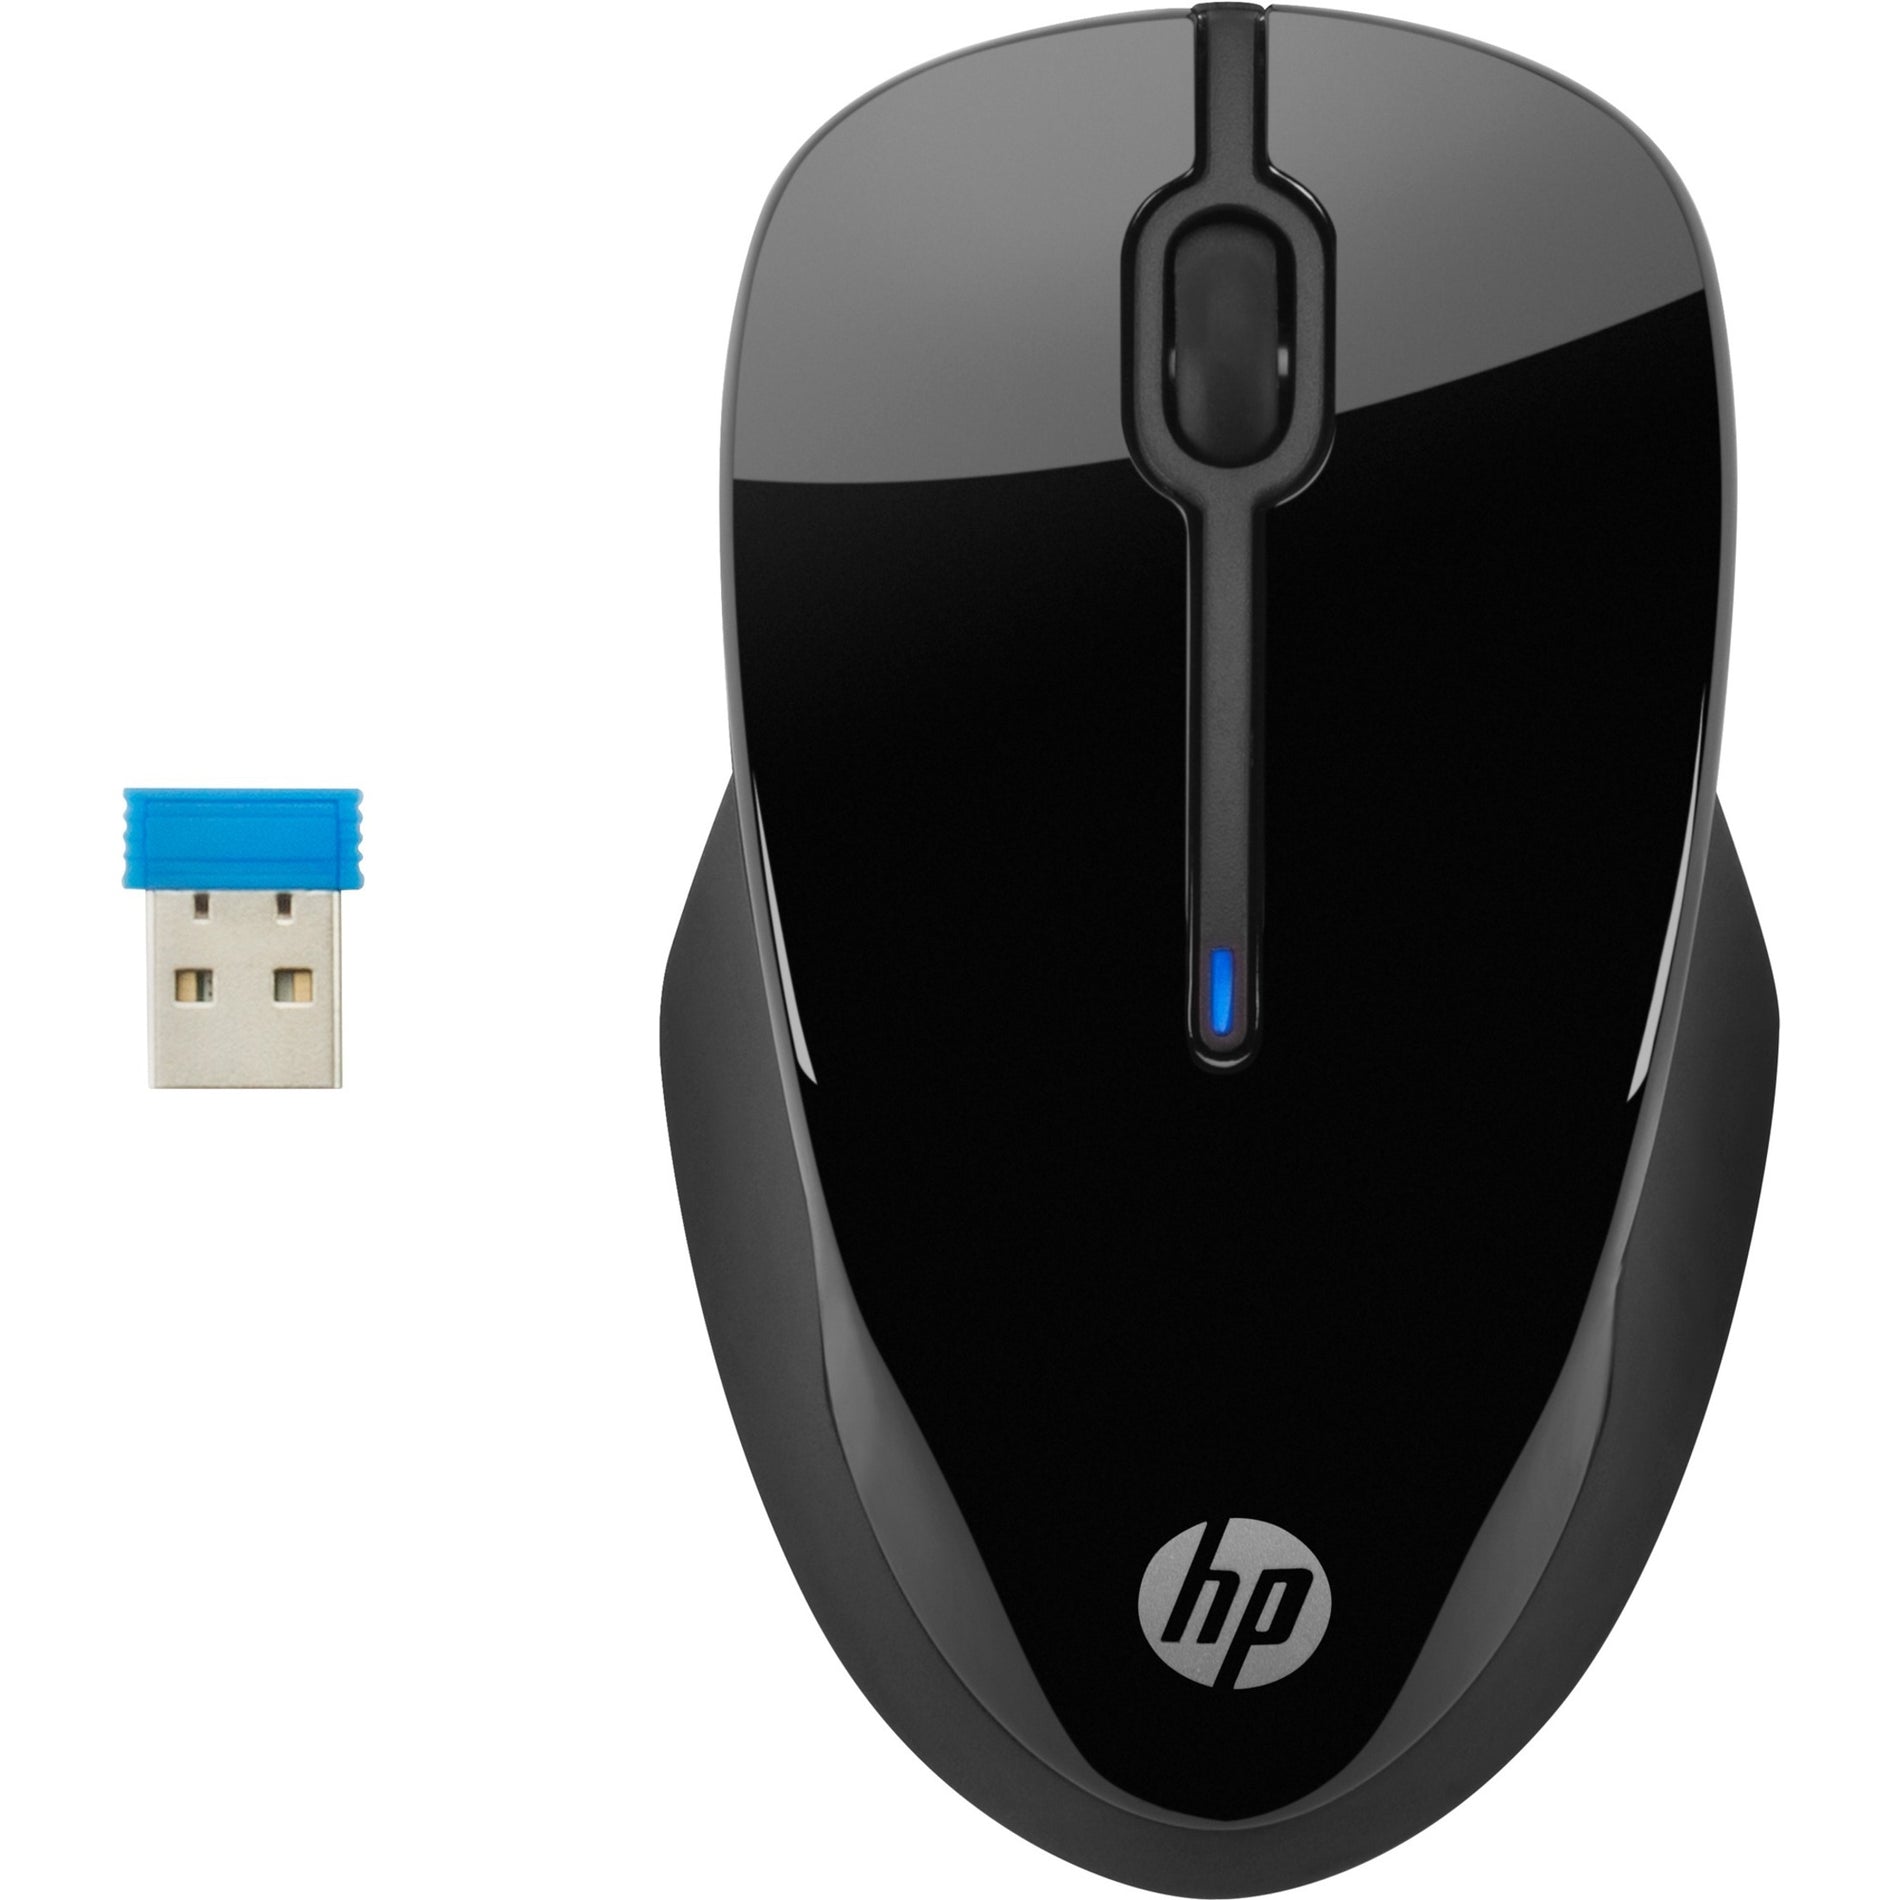 HP X3000 G2 Mouse、ワイヤレスオプティカル、USBタイプA、ブラック HP X3000 G2 マウス、ワイヤレスオプティカル、USBタイプA、ブラック